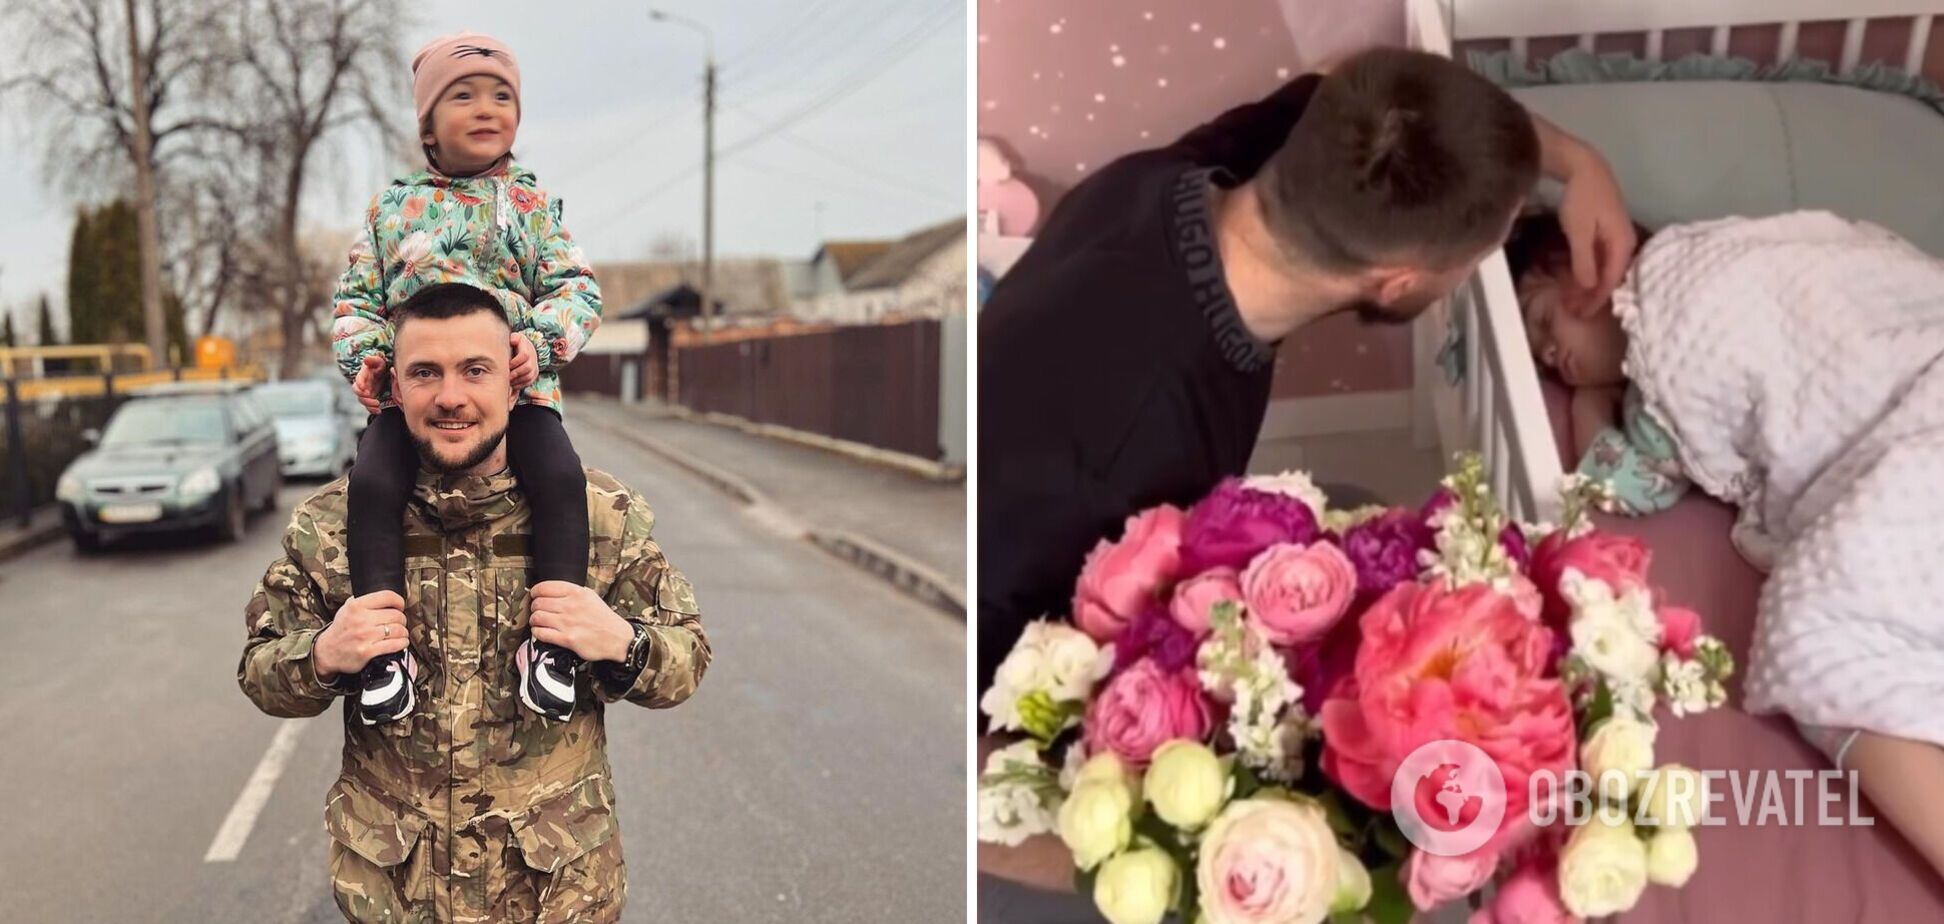 'Прямо с позиции, лишь сбросив броню': рэпер-воин Ярмак сделал сюрприз дочери в день ее рождения и умилил фанов